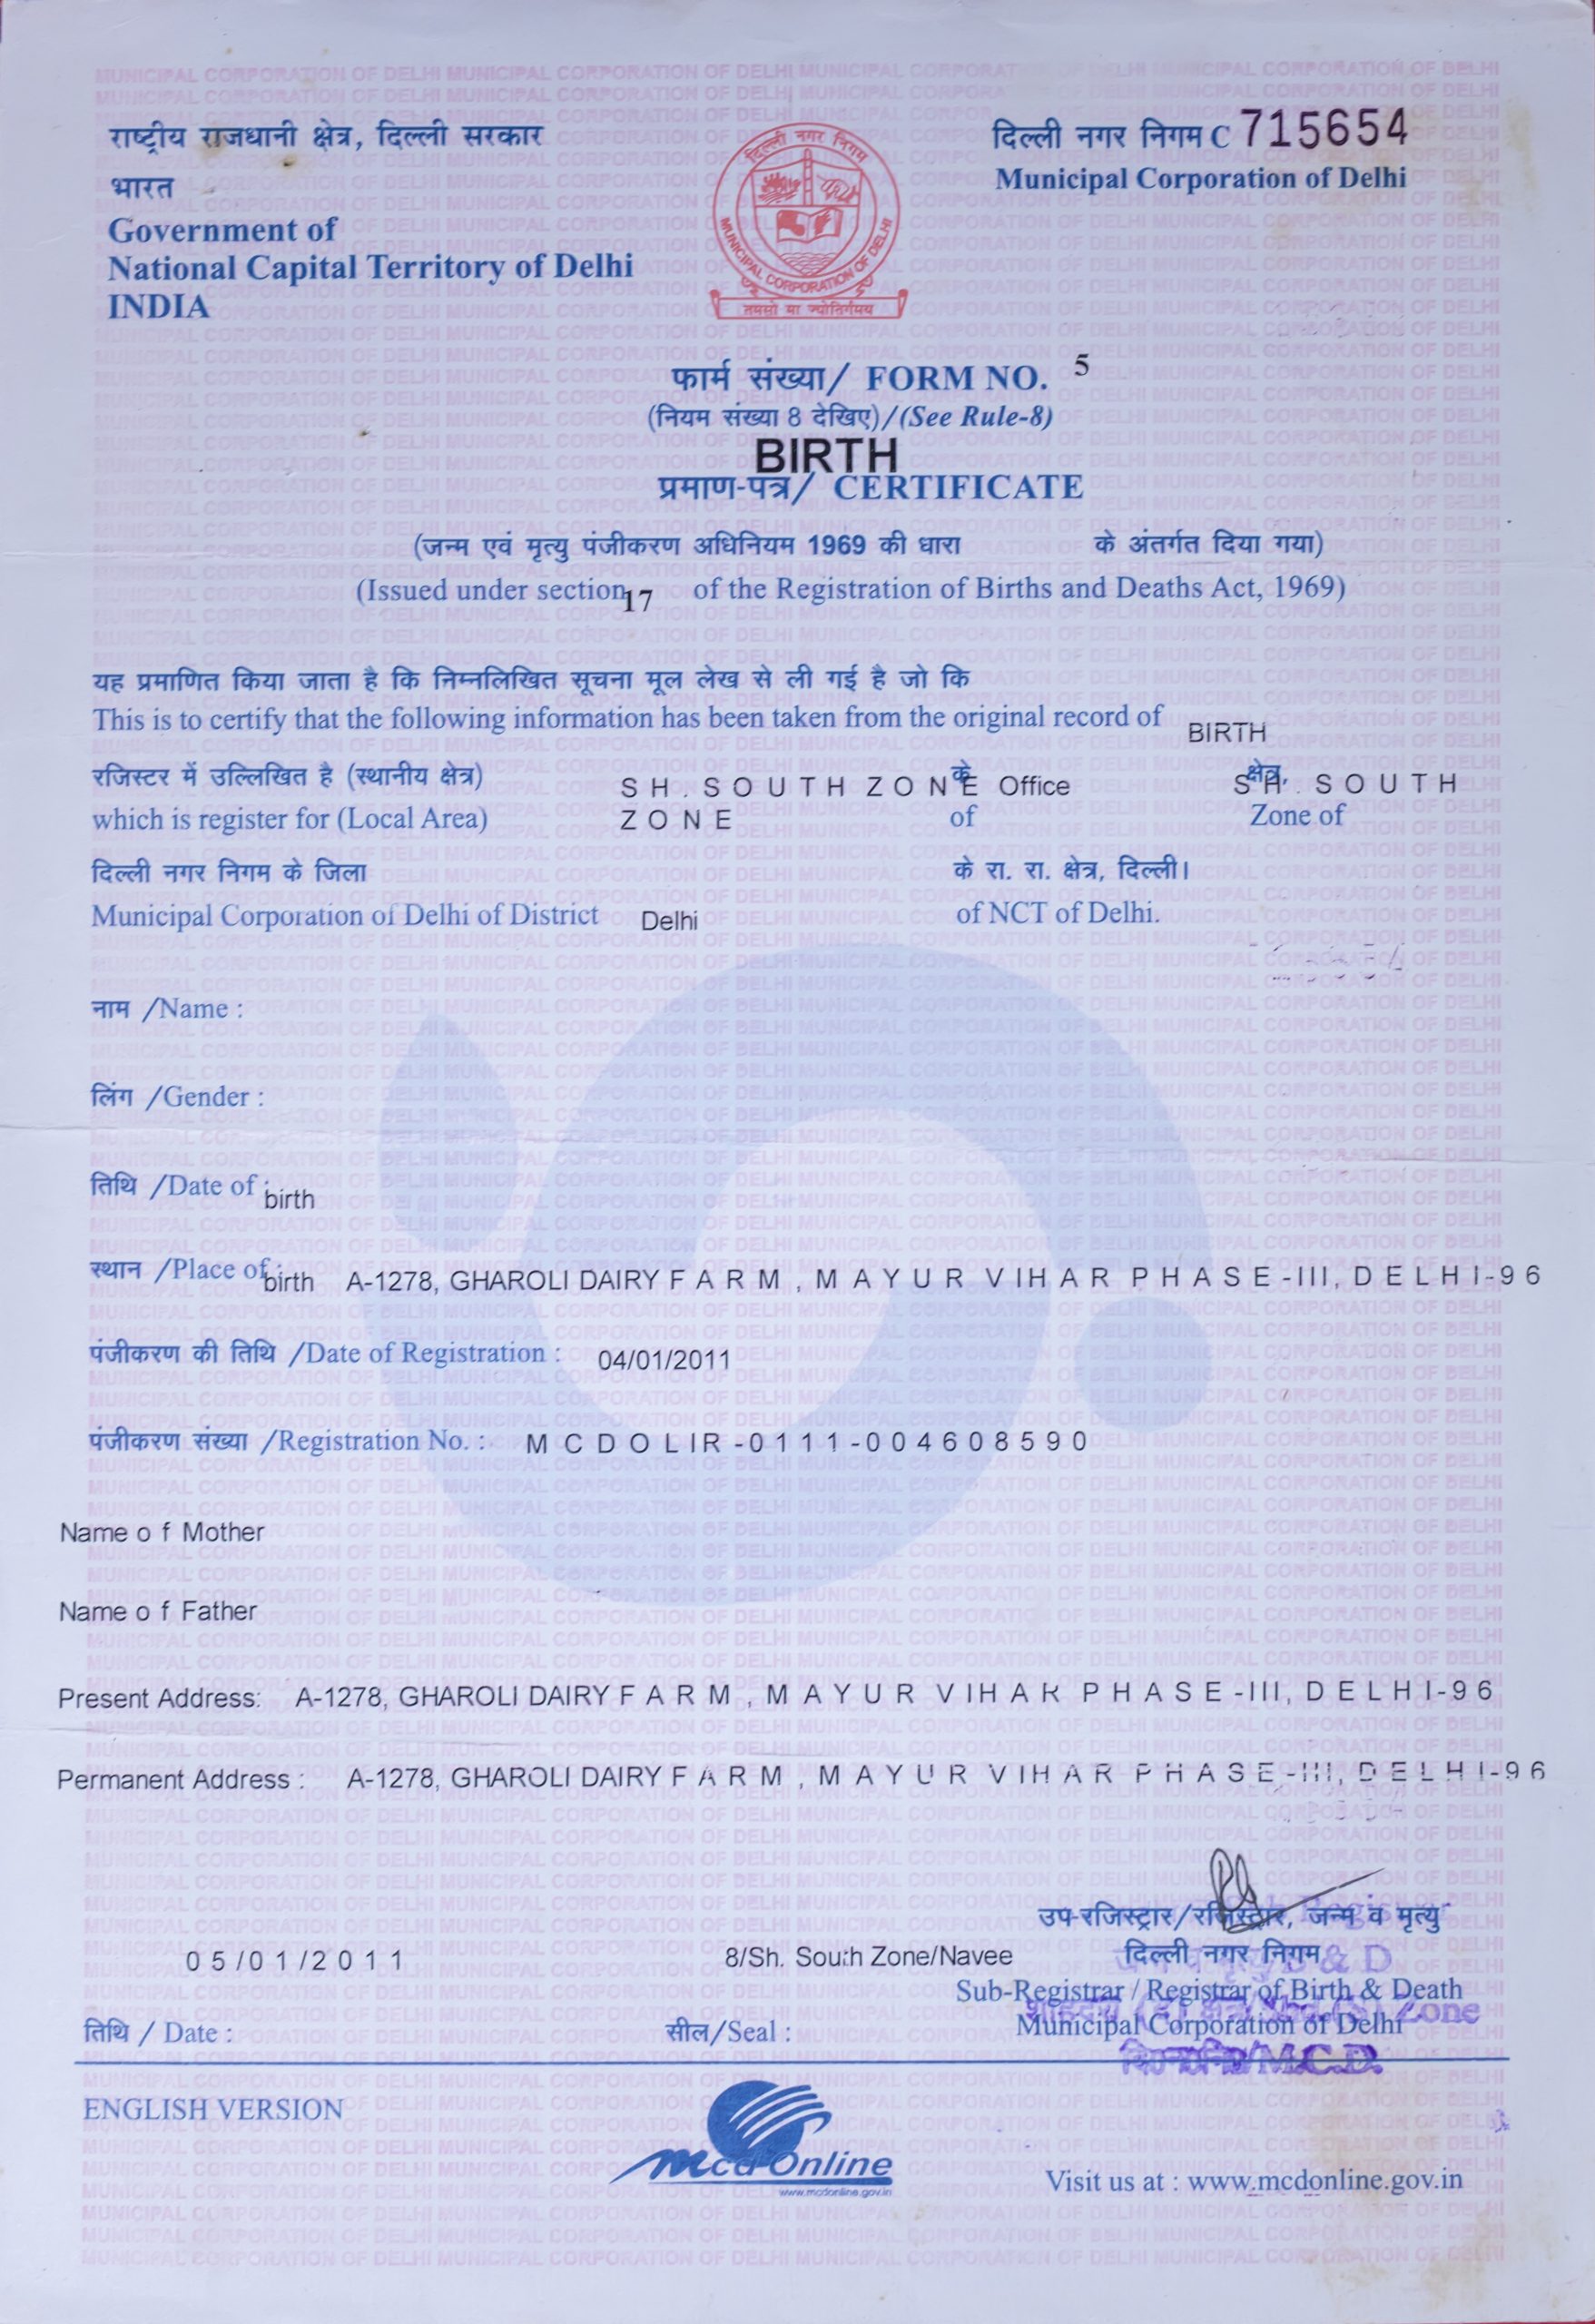 A birth Certificate